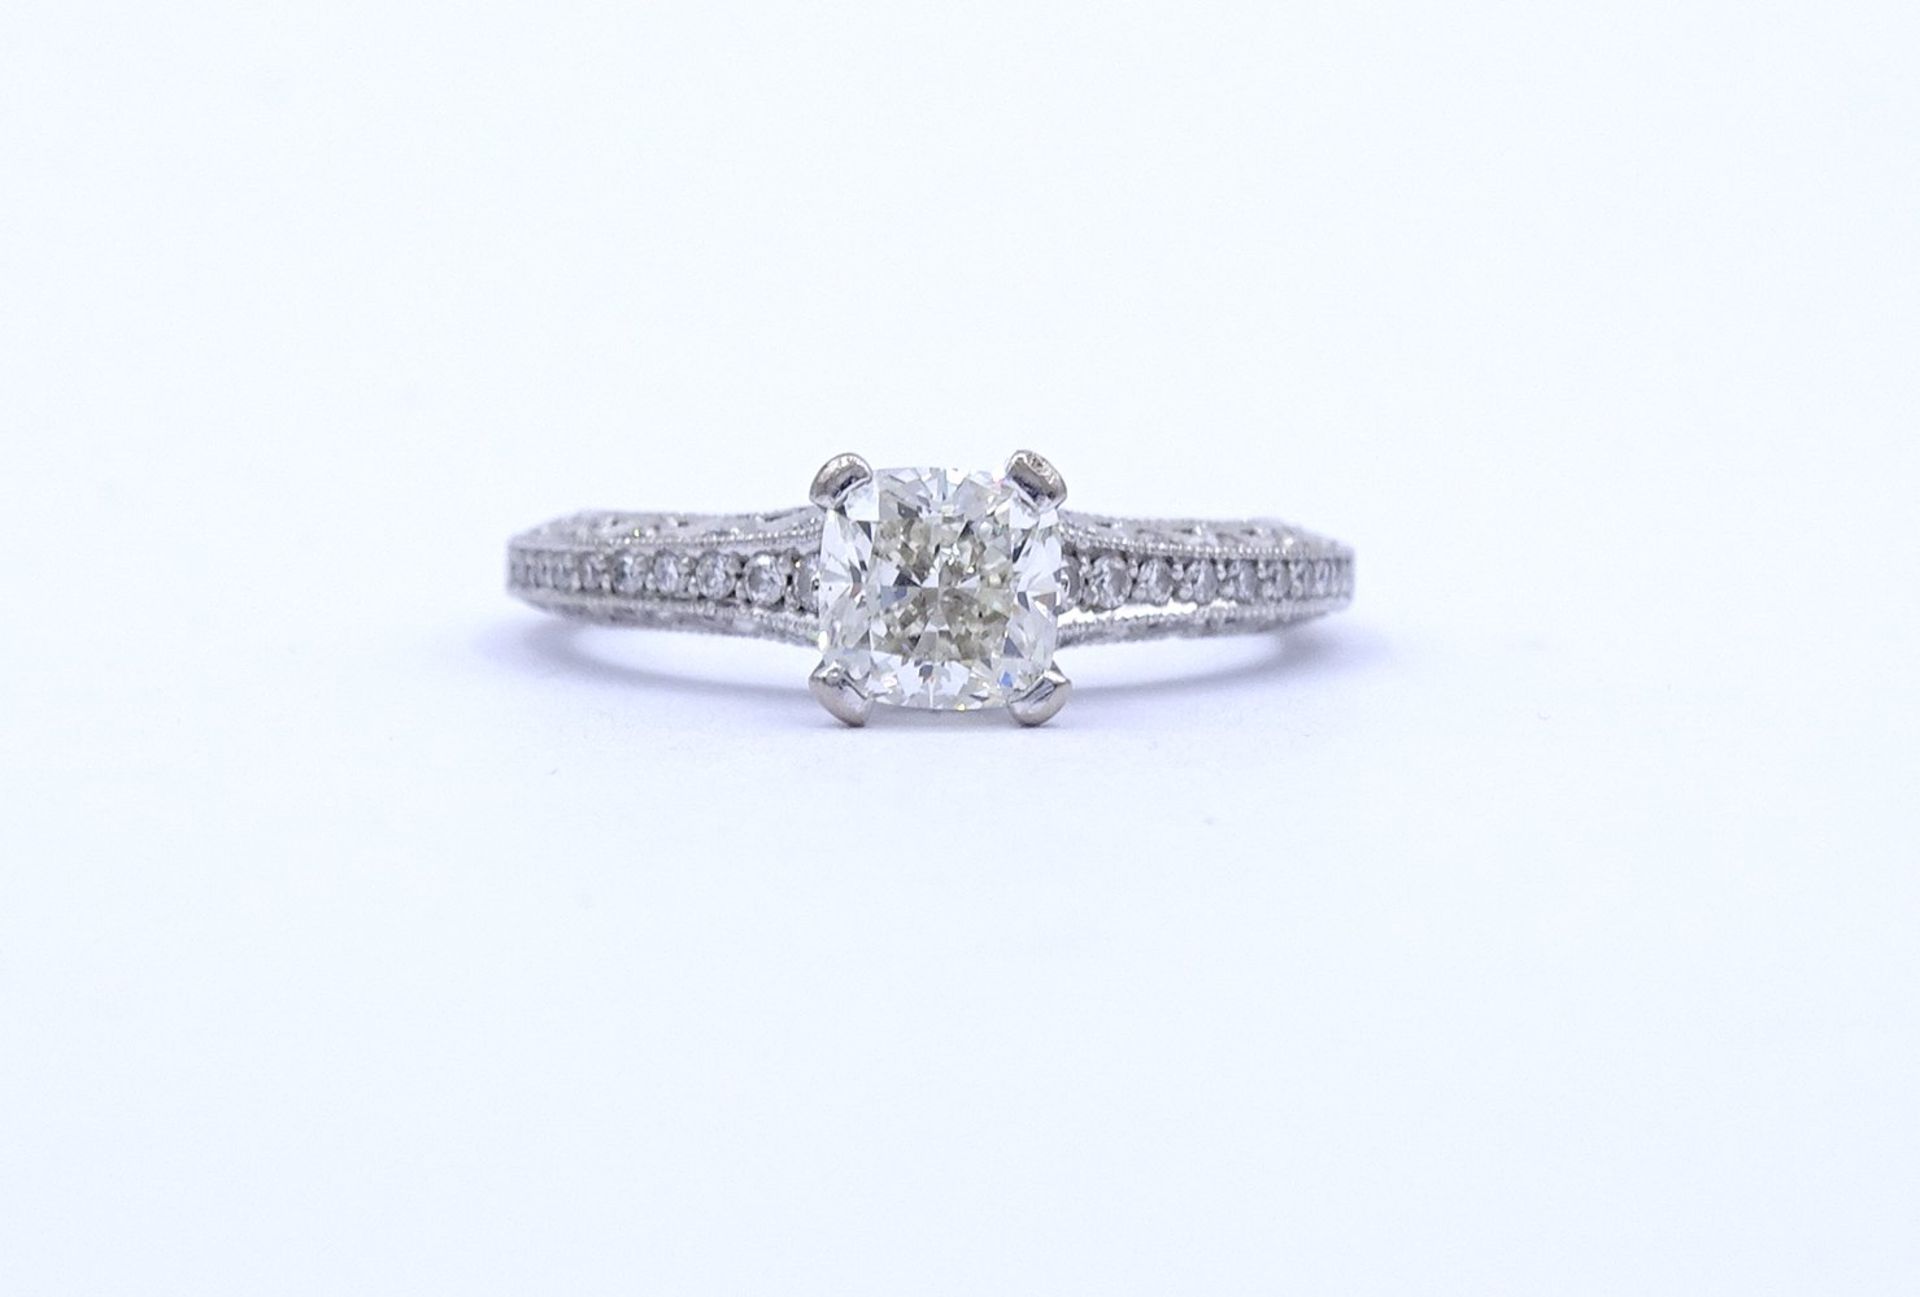 Princess Cut Ring - Verlobungsring , Princess 1,0ct., und 47 kl. Diamanten si, G-H, WG 18K "Tacori" - Image 3 of 20